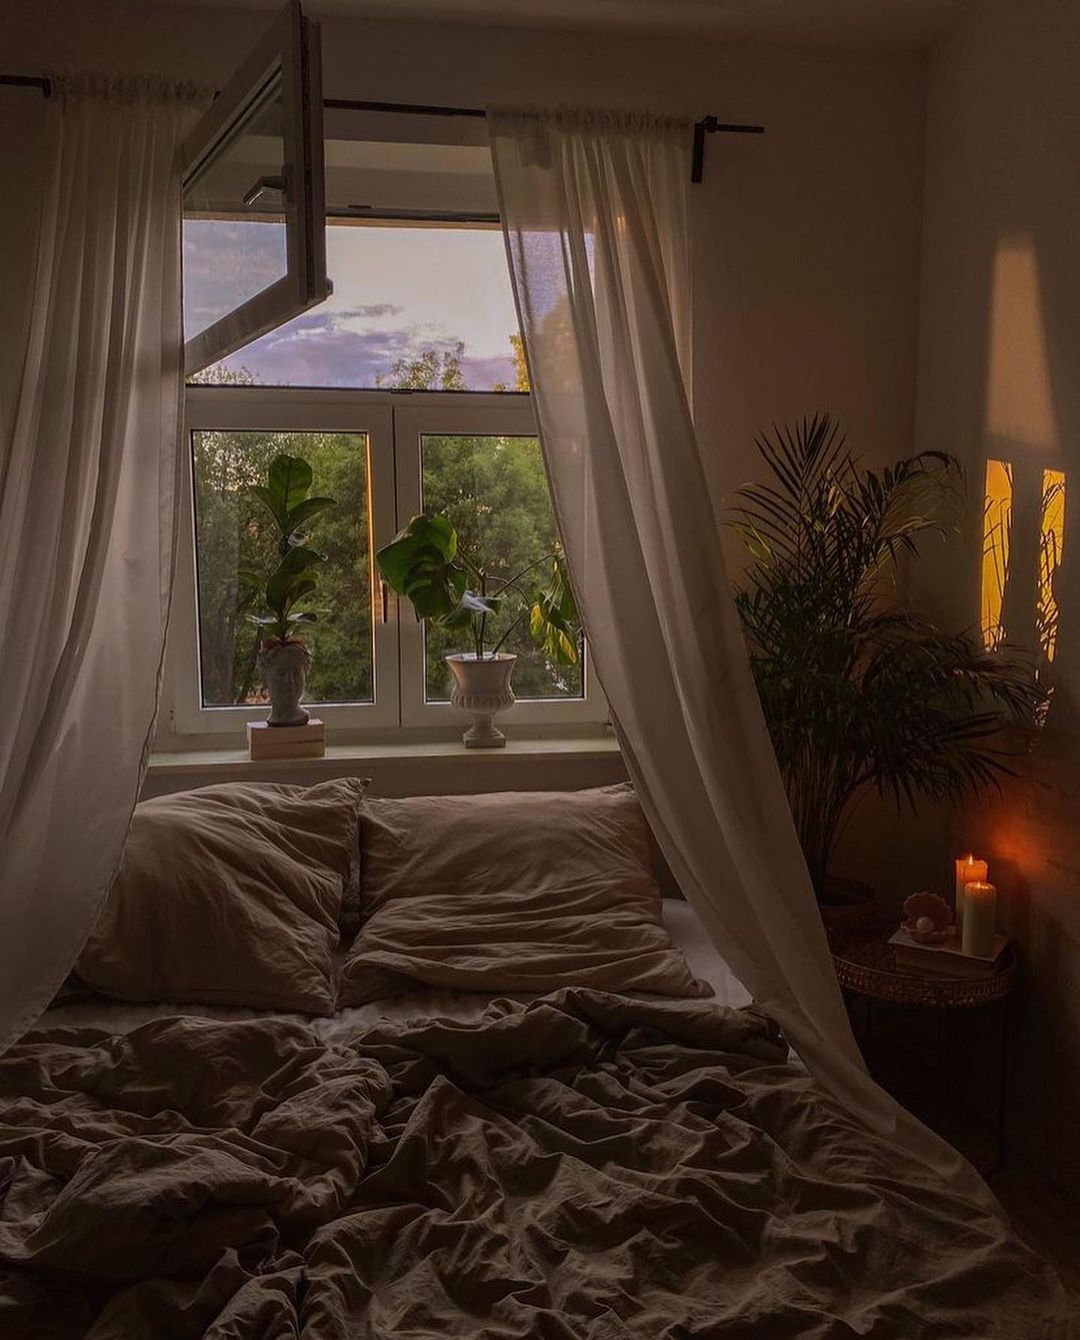 Top 10 Winter Bedroom Essentials You Need In 2023 | Room Decor Tips ...